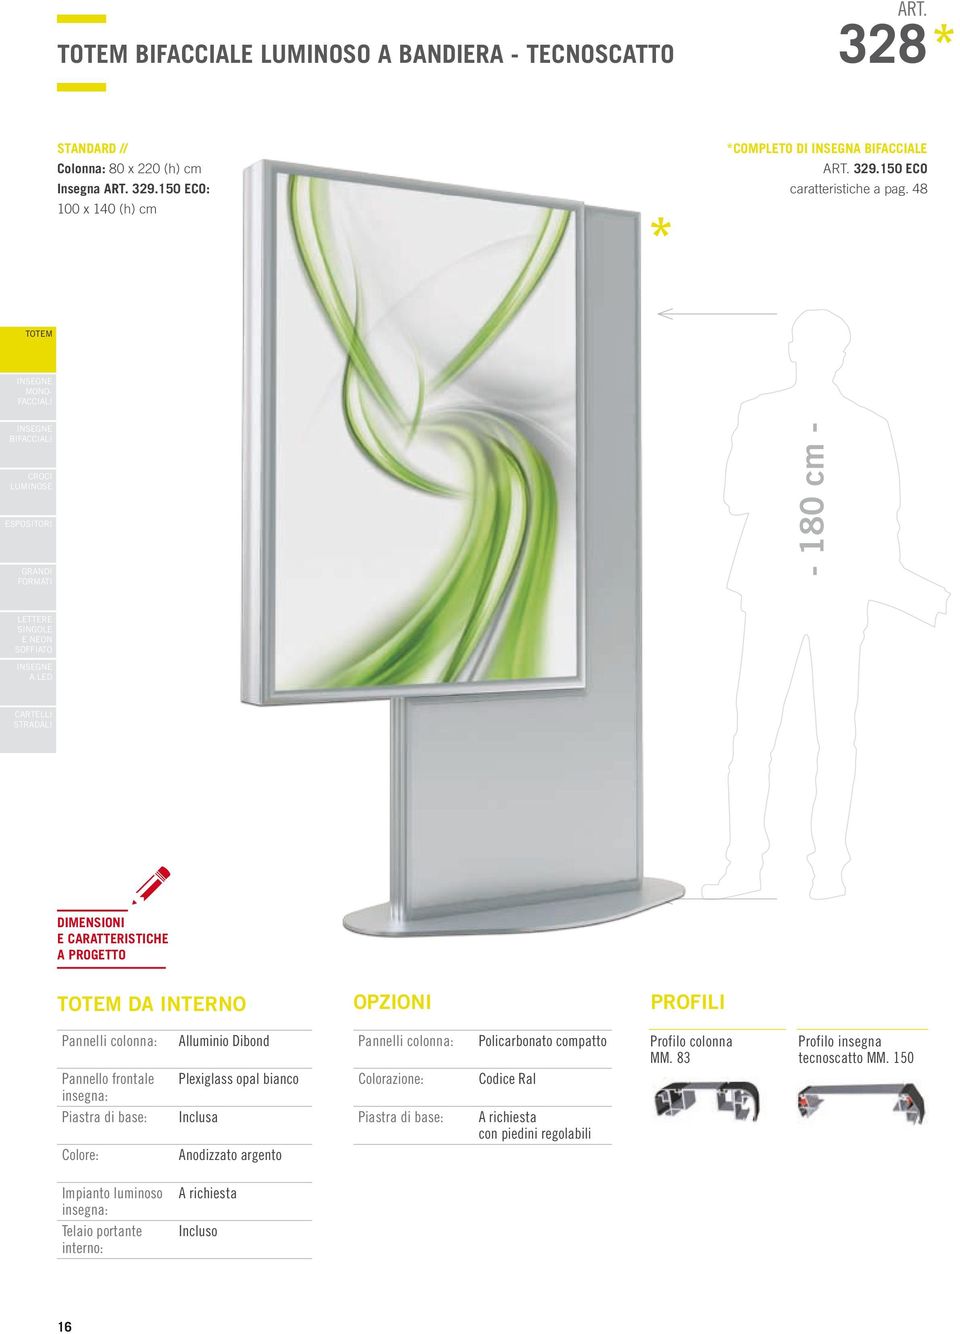 48 BI - 180 cm - DA INTERNO PROFILI Pannelli colonna: Pannello frontale insegna: Piastra di base: Alluminio Dibond Plexiglass opal